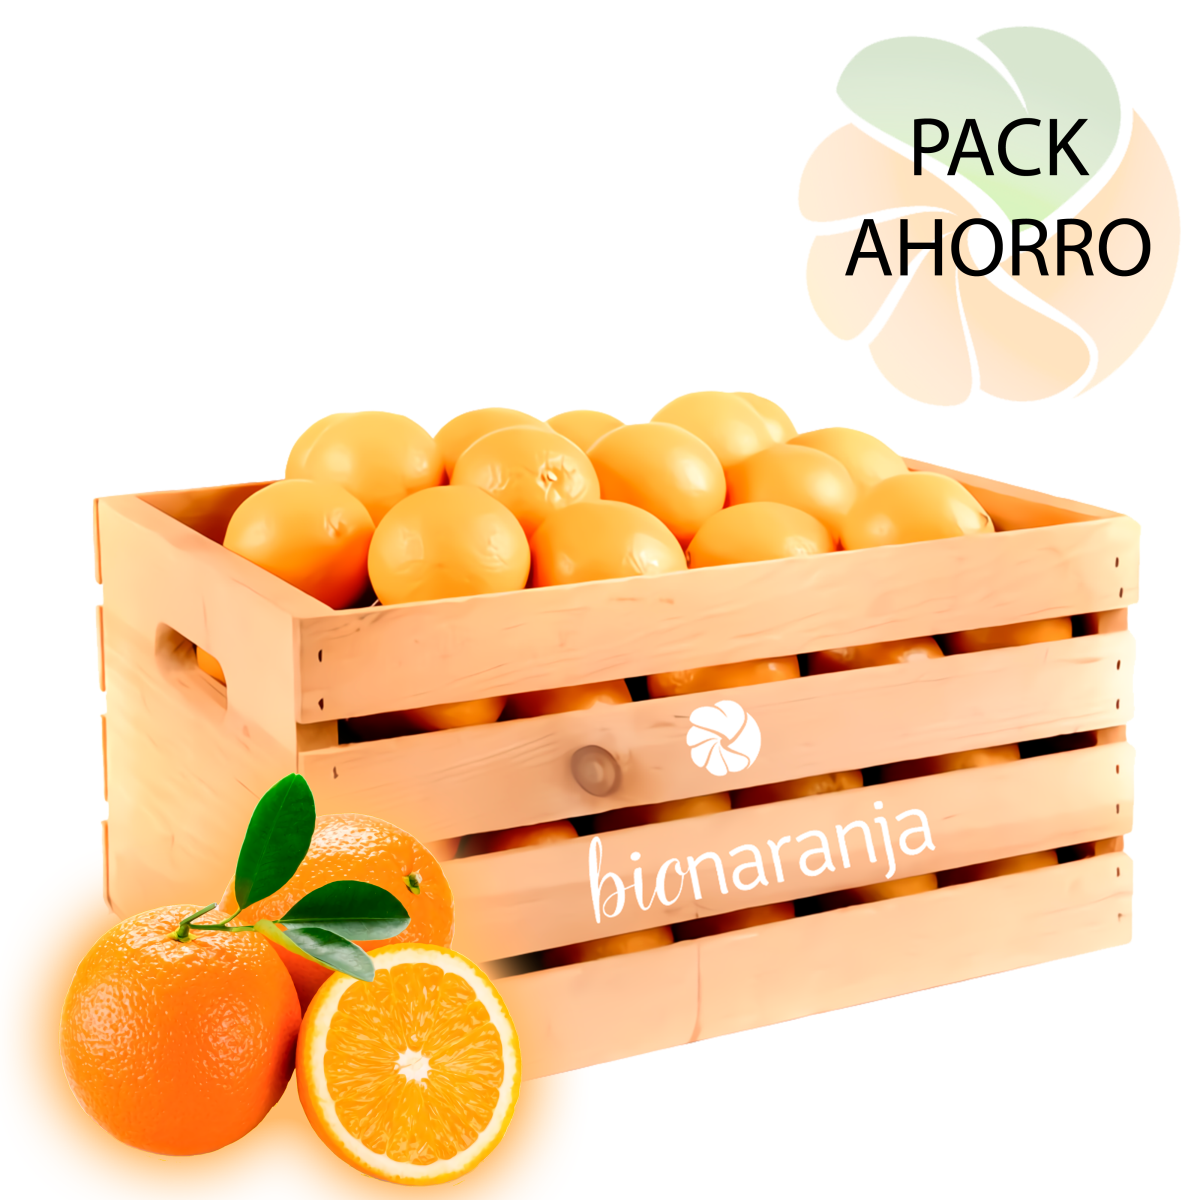 Naranjas valencianas de mesa ecológicas pack ahorro | bionaranja.com